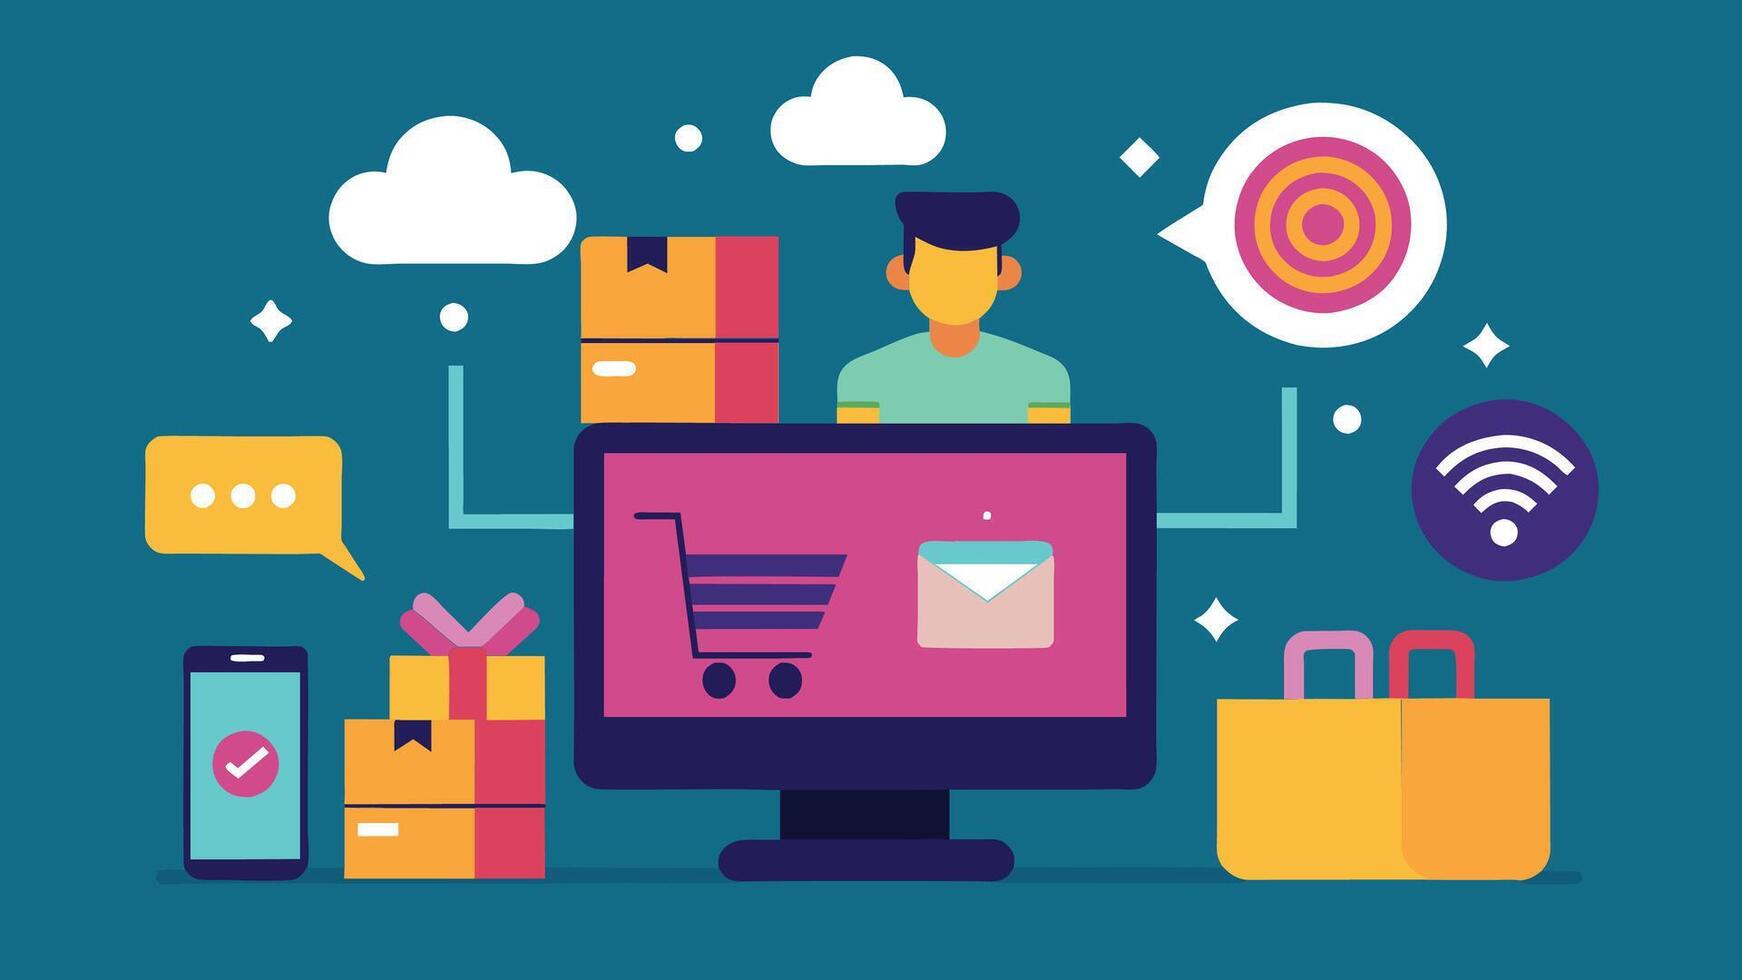 in linea shopping e e-commerce concetto illustrazioni vettore